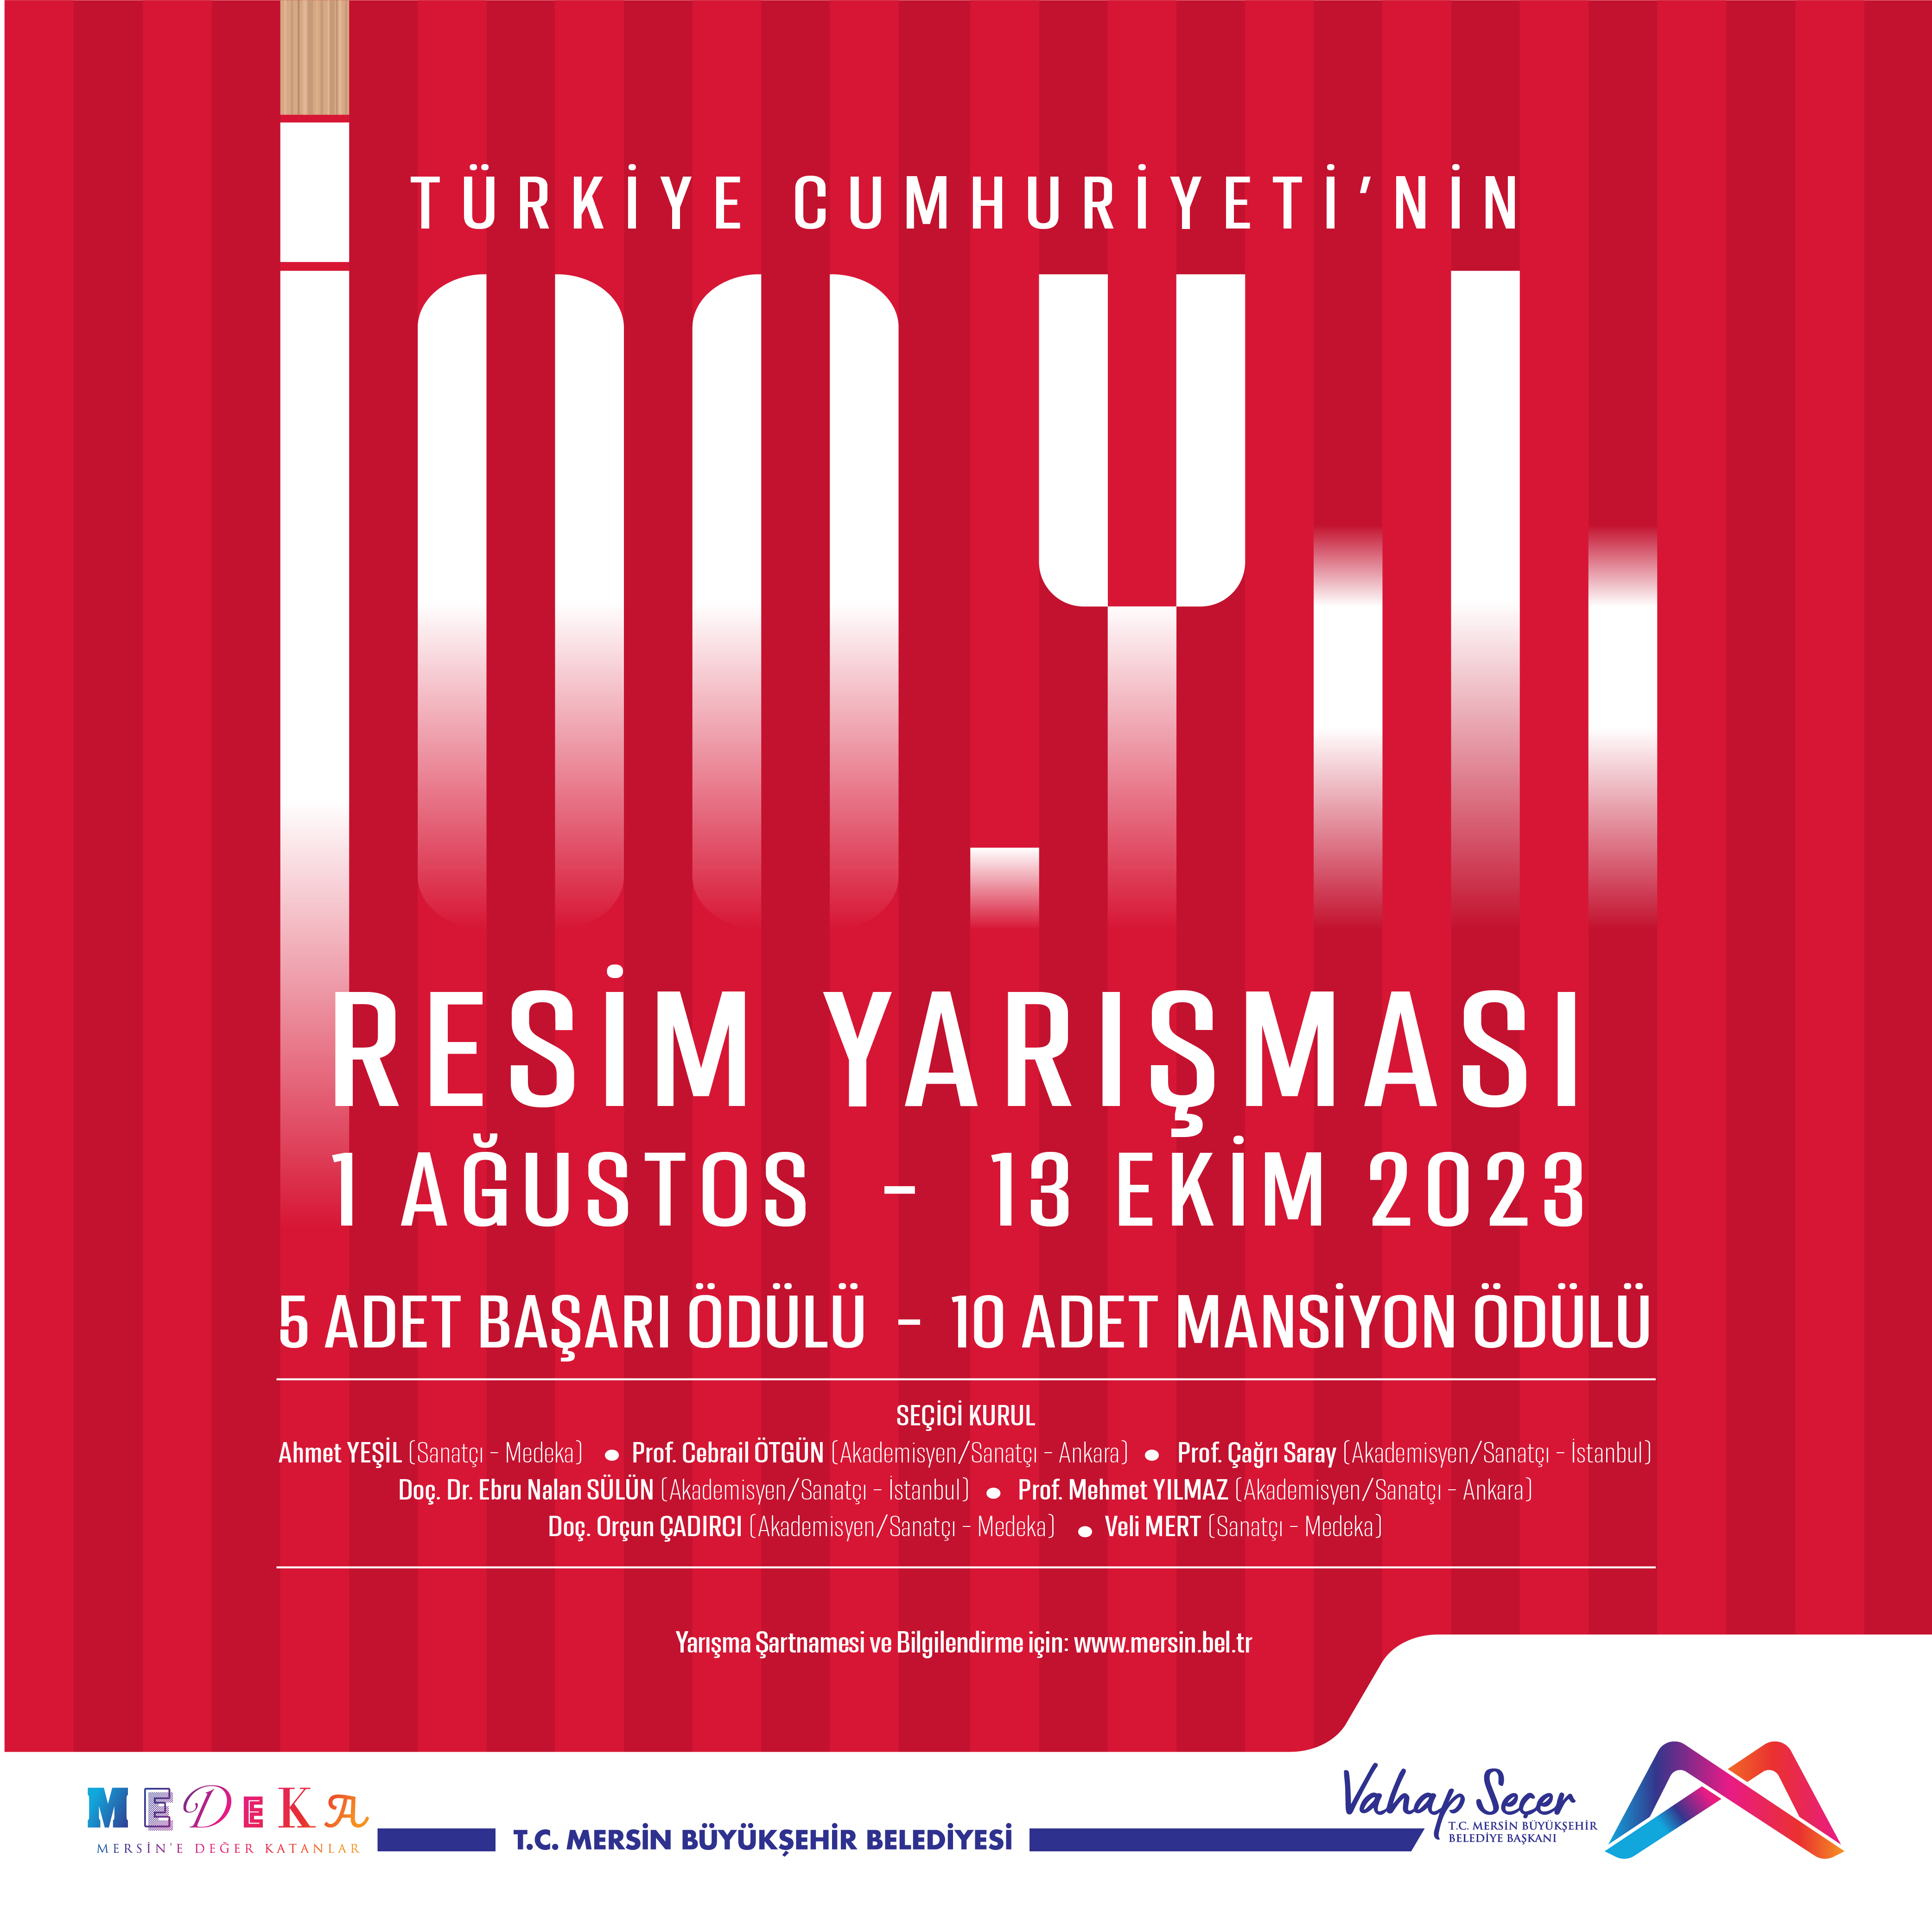 Türkiye Cumhuriyeti’nin 100. yılına özel Resim Yarışması